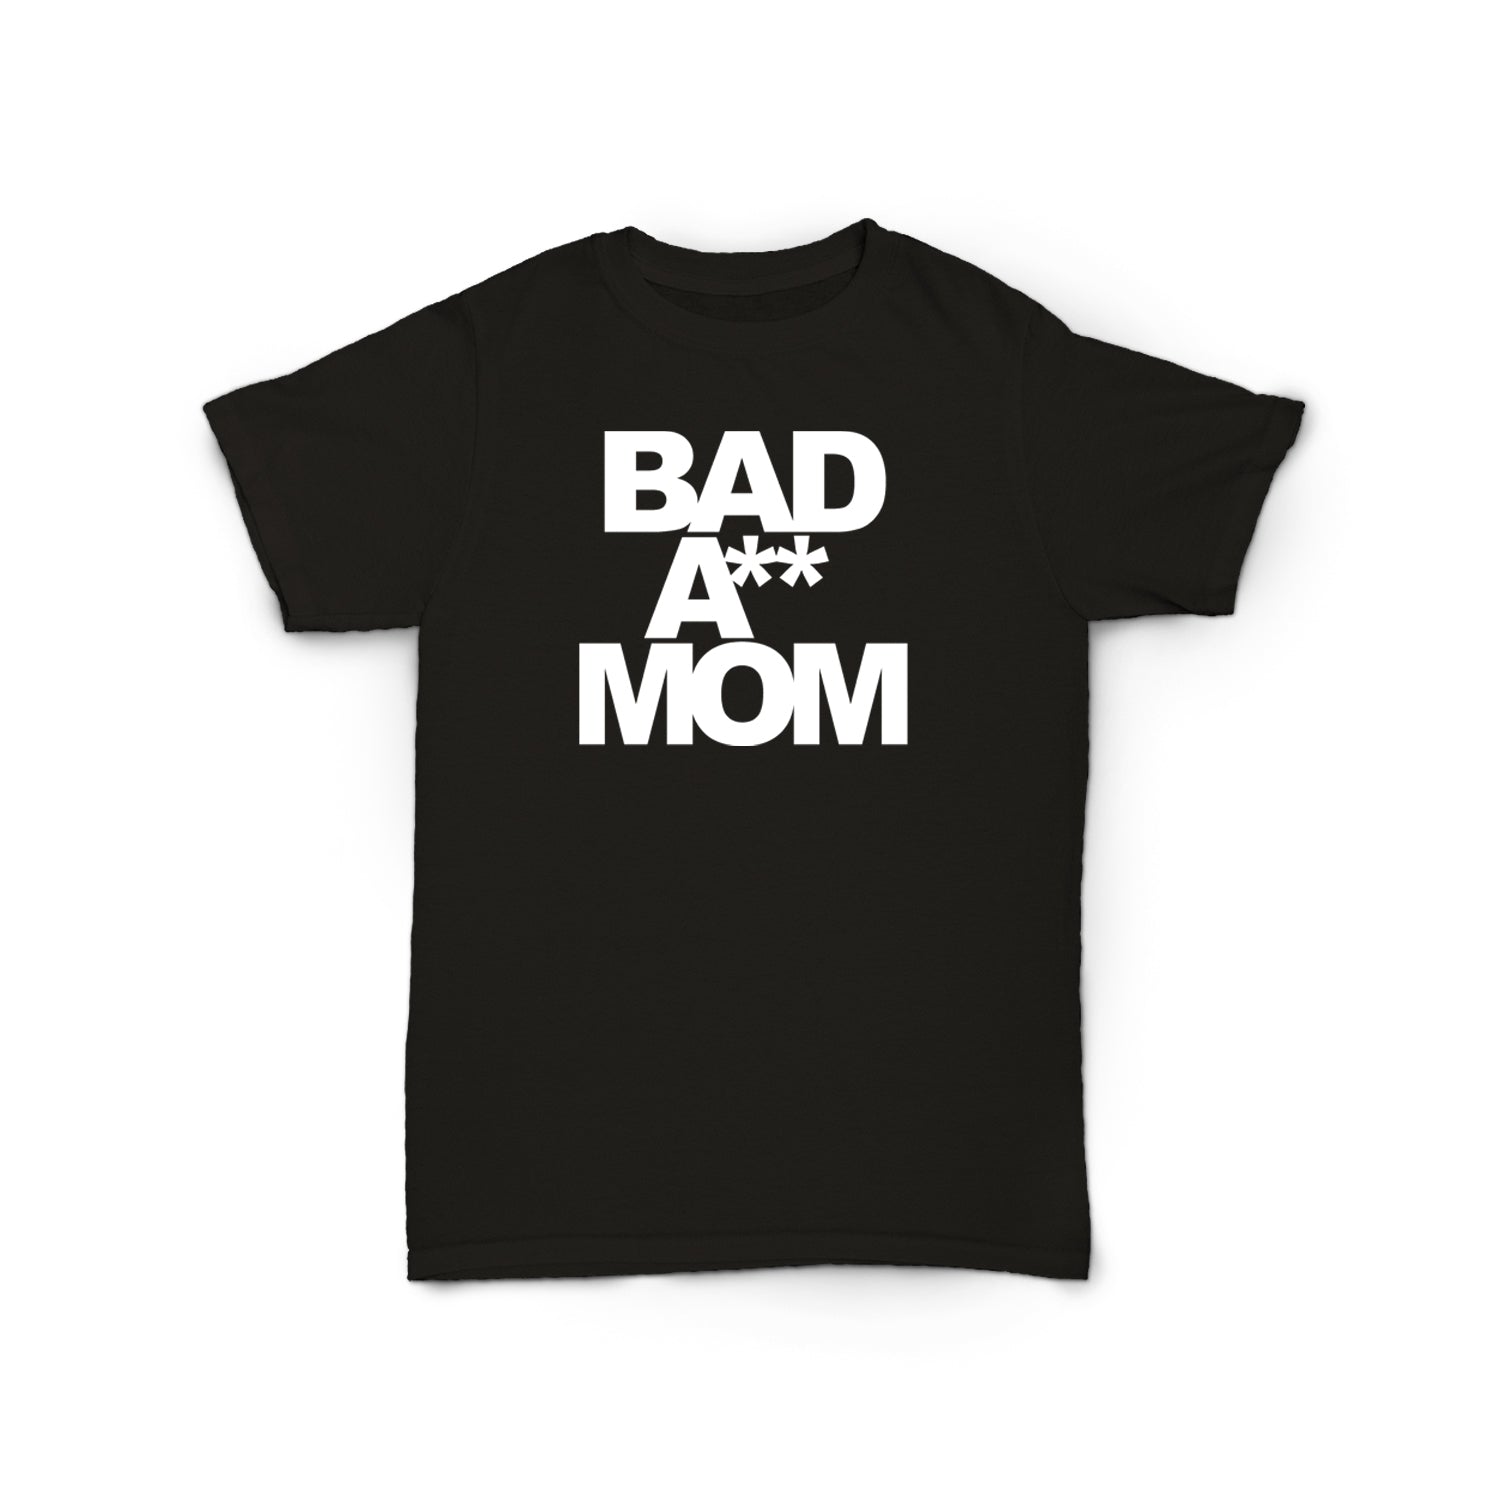 Bad A** Mom Tee